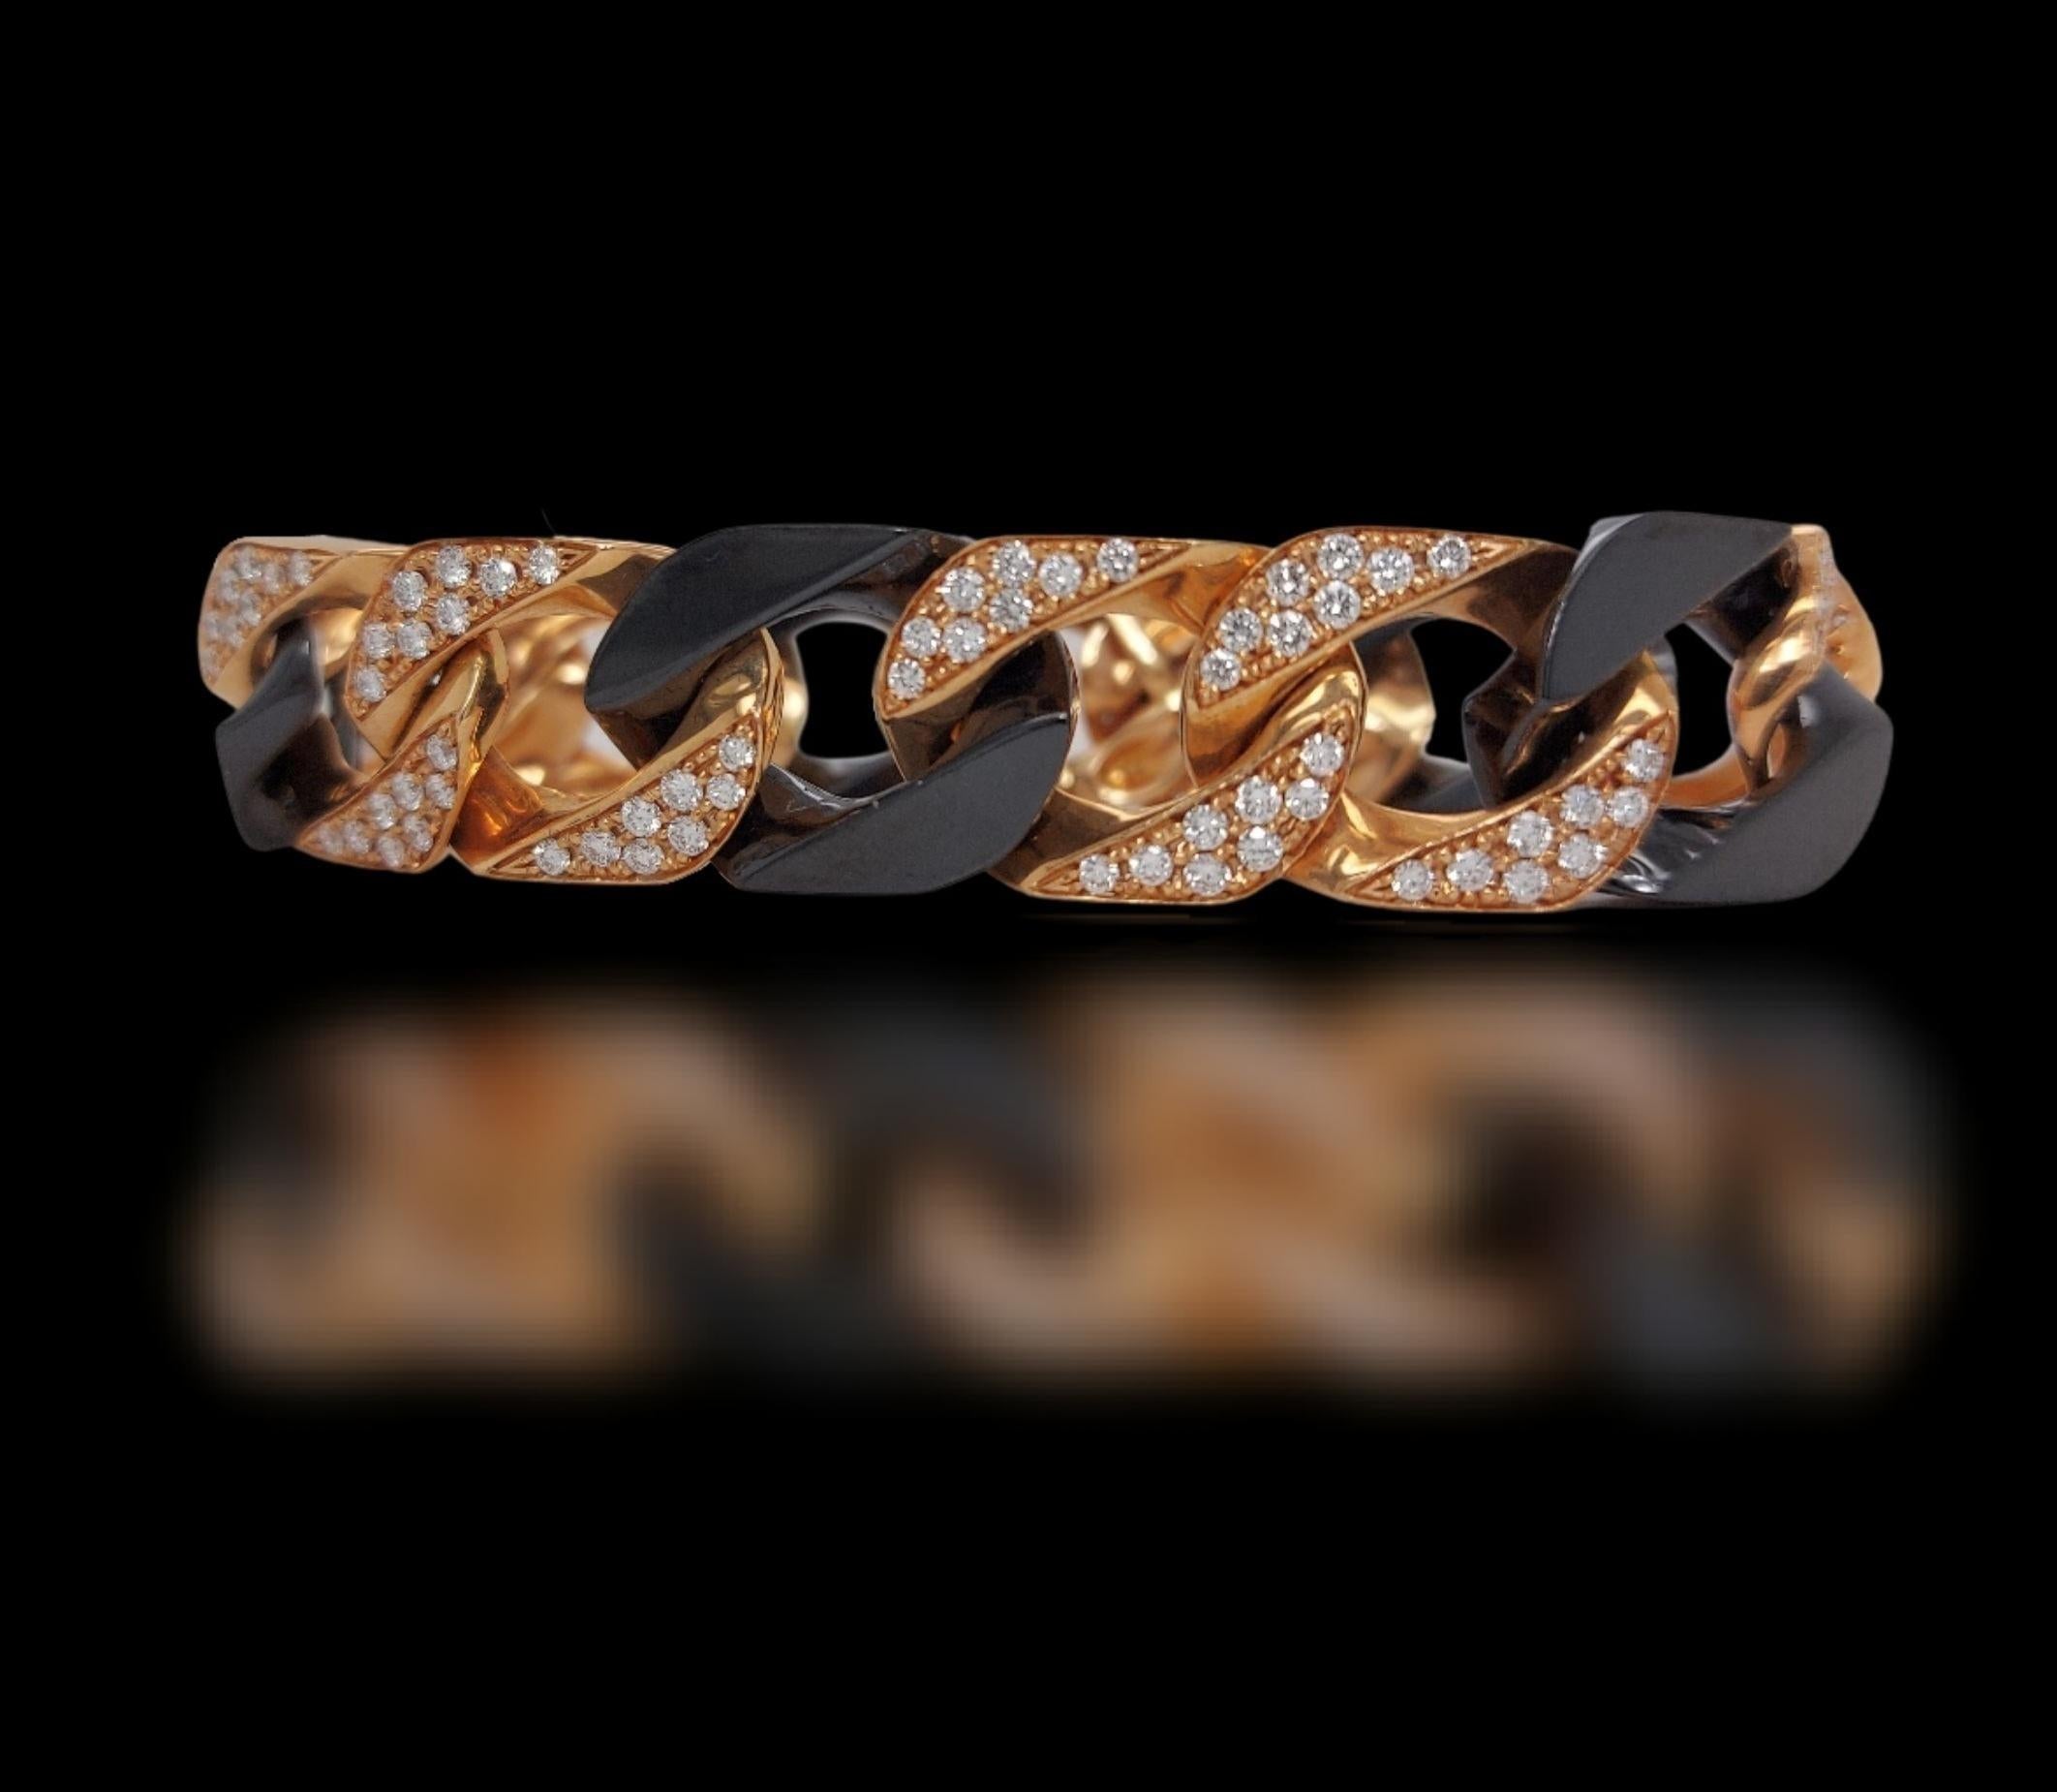 18kt Pink Gold Bracelet With Brilliant Cut Diamonds and Black Onyx

Diamonds: 3.6ct diamonds

Material: 18kt pink gold and black onyx

Total weight: 47.3 grams / 1.670 oz / 30.5 dwt

Measurements: length 18 cm. 